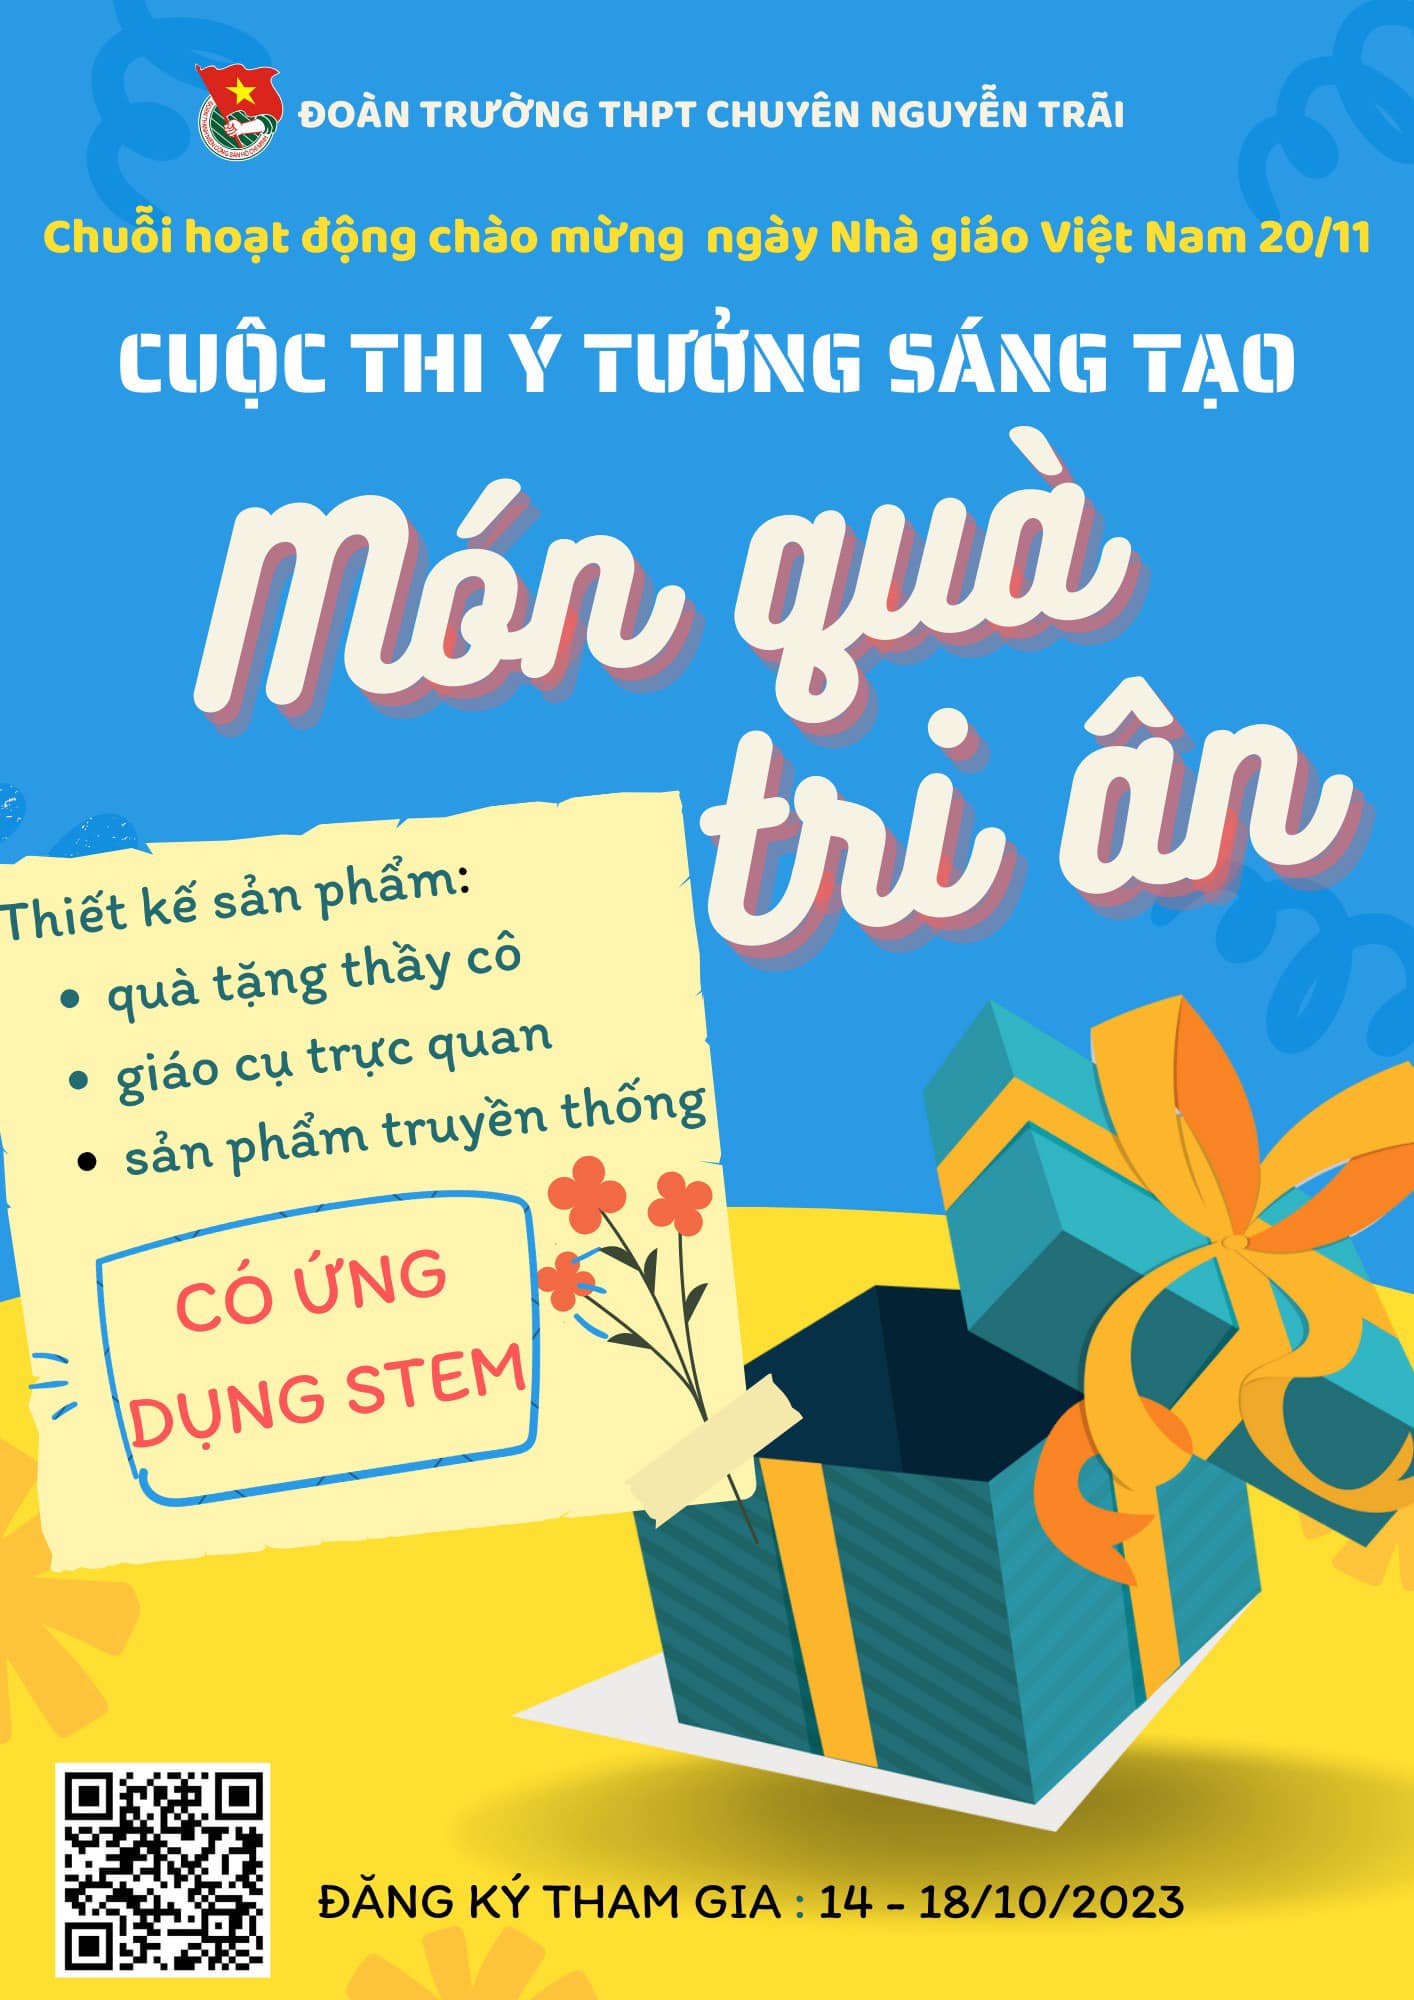 Lần đầu tiên xuất hiện tại Chuyên Nguyễn Trãi: Cuộc thi ý tưởng sáng tạo “Món quà tri ân” với các sản phẩm có ứng dụng STEM